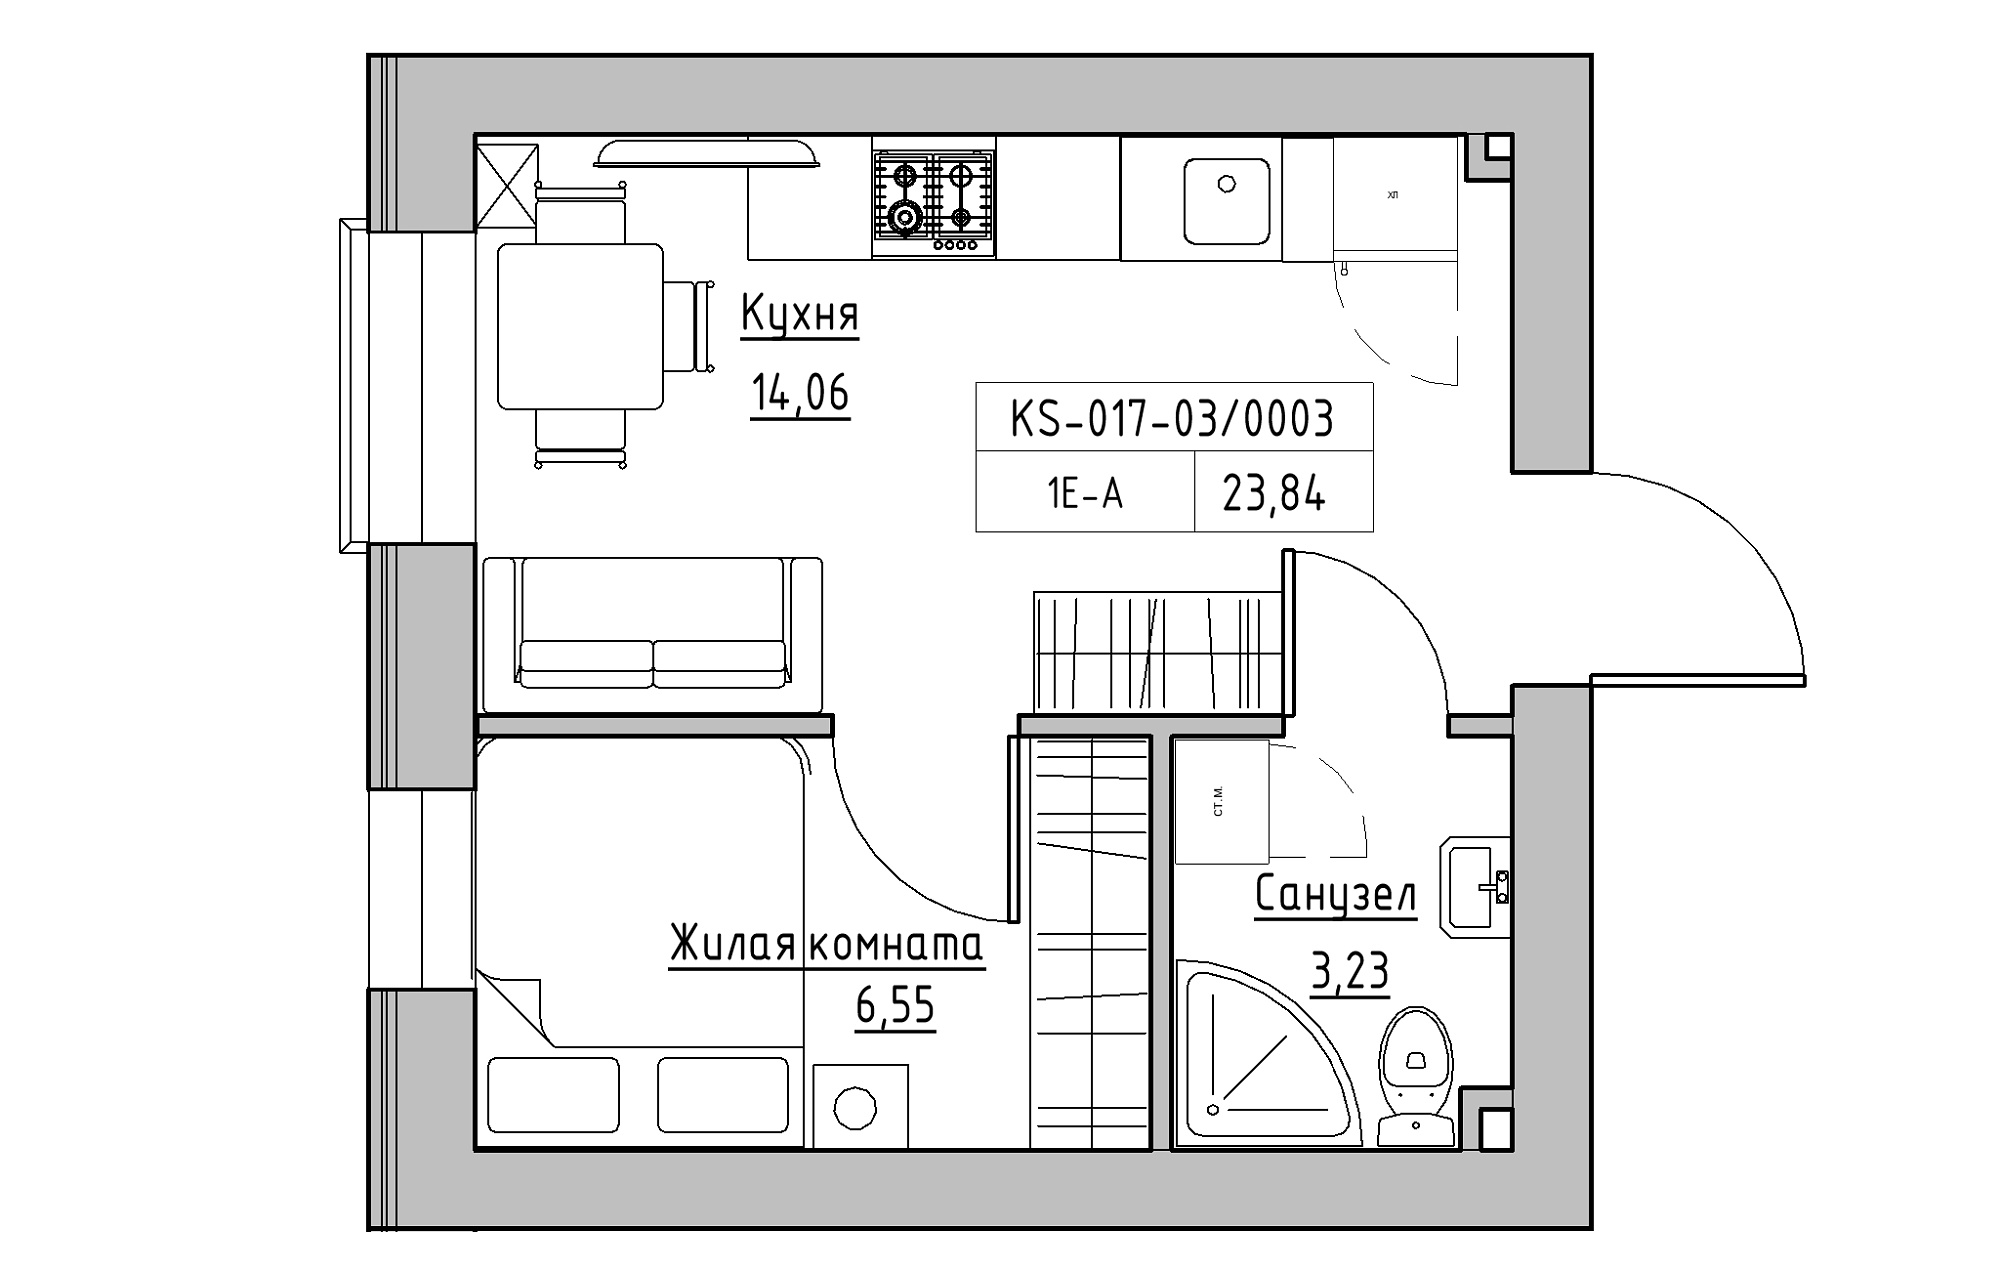 Планировка 1-к квартира площей 23.84м2, KS-017-03/0003.